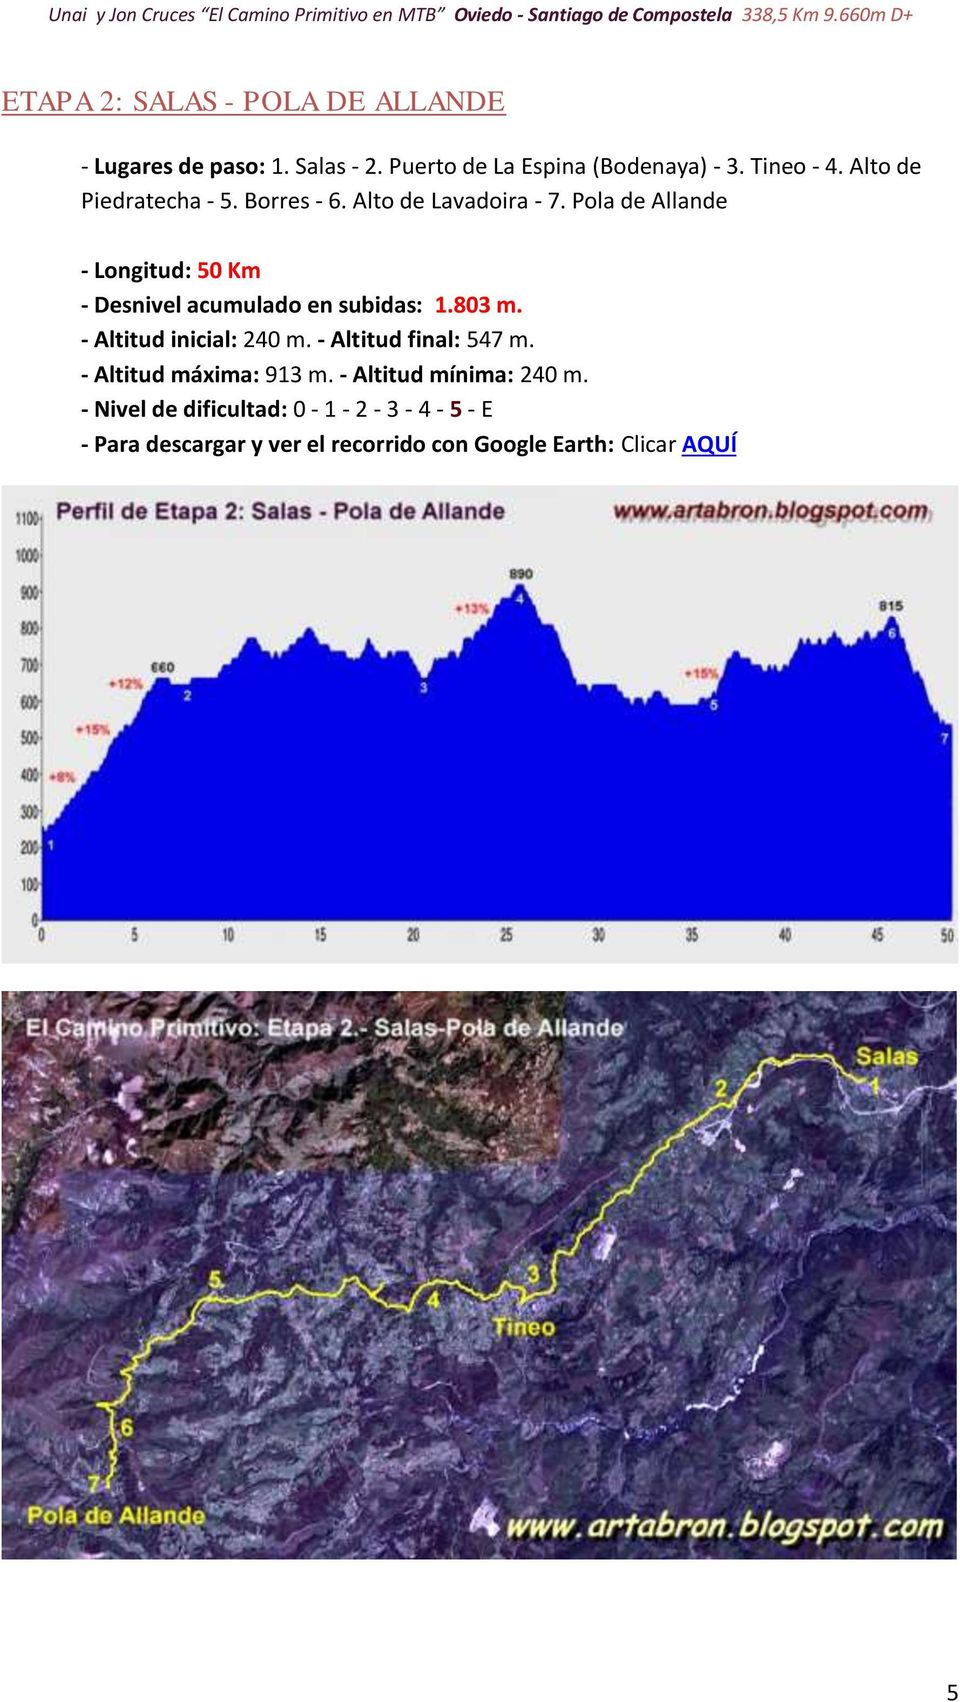 Pola de Allande - Longitud: 50 Km - Desnivel acumulado en subidas: 1.803 m. - Altitud inicial: 240 m.